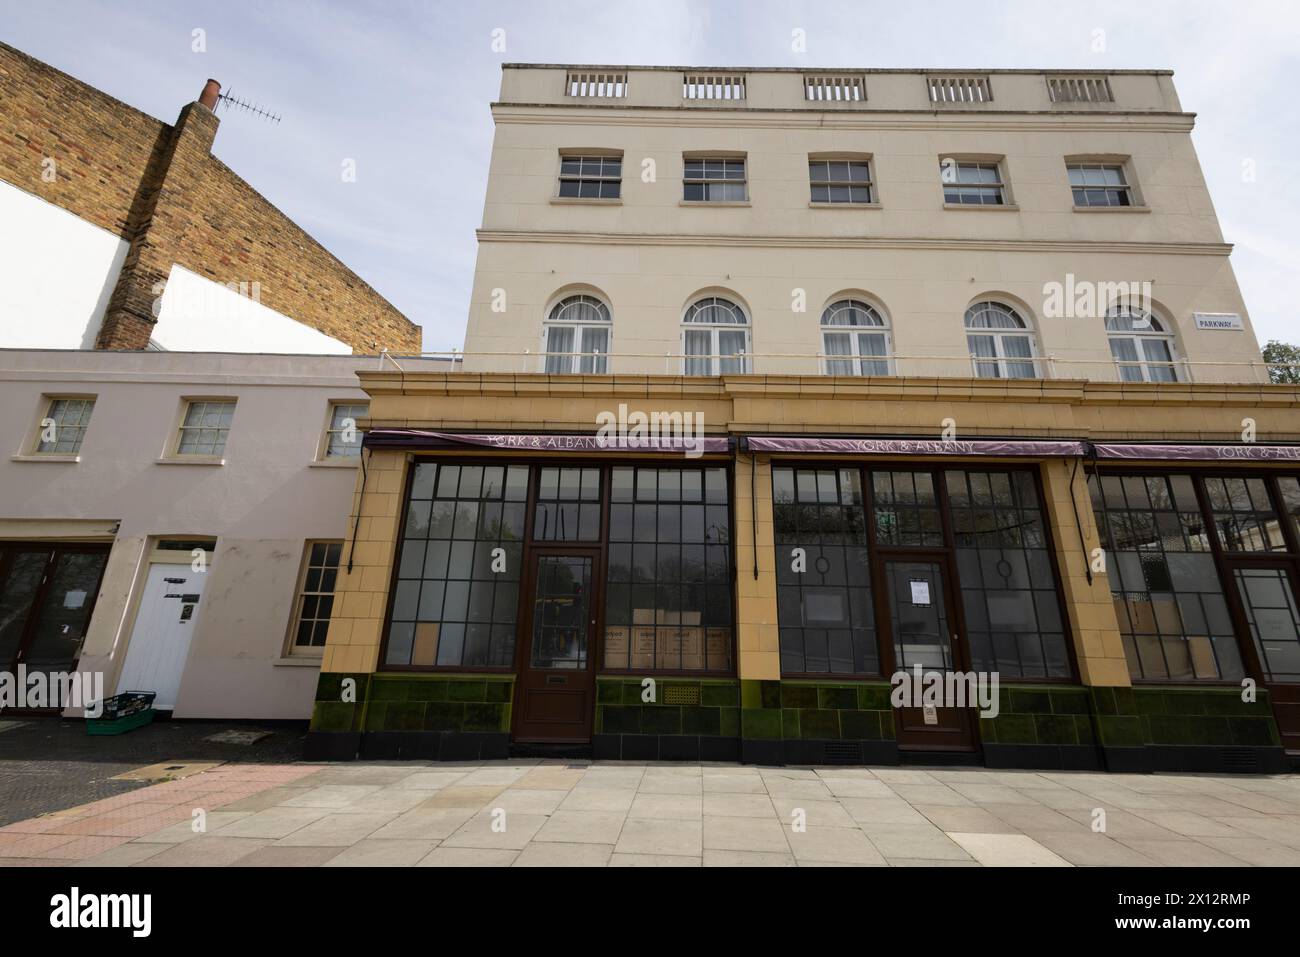 Besetzer besetzen Gordon Ramsays 13 Millionen Pfund teuren Regent’s Park Pub, York & Albany Pub und Boutique Hotel in einer wohlhabenden Ecke von Camden im Norden Londons. Stockfoto